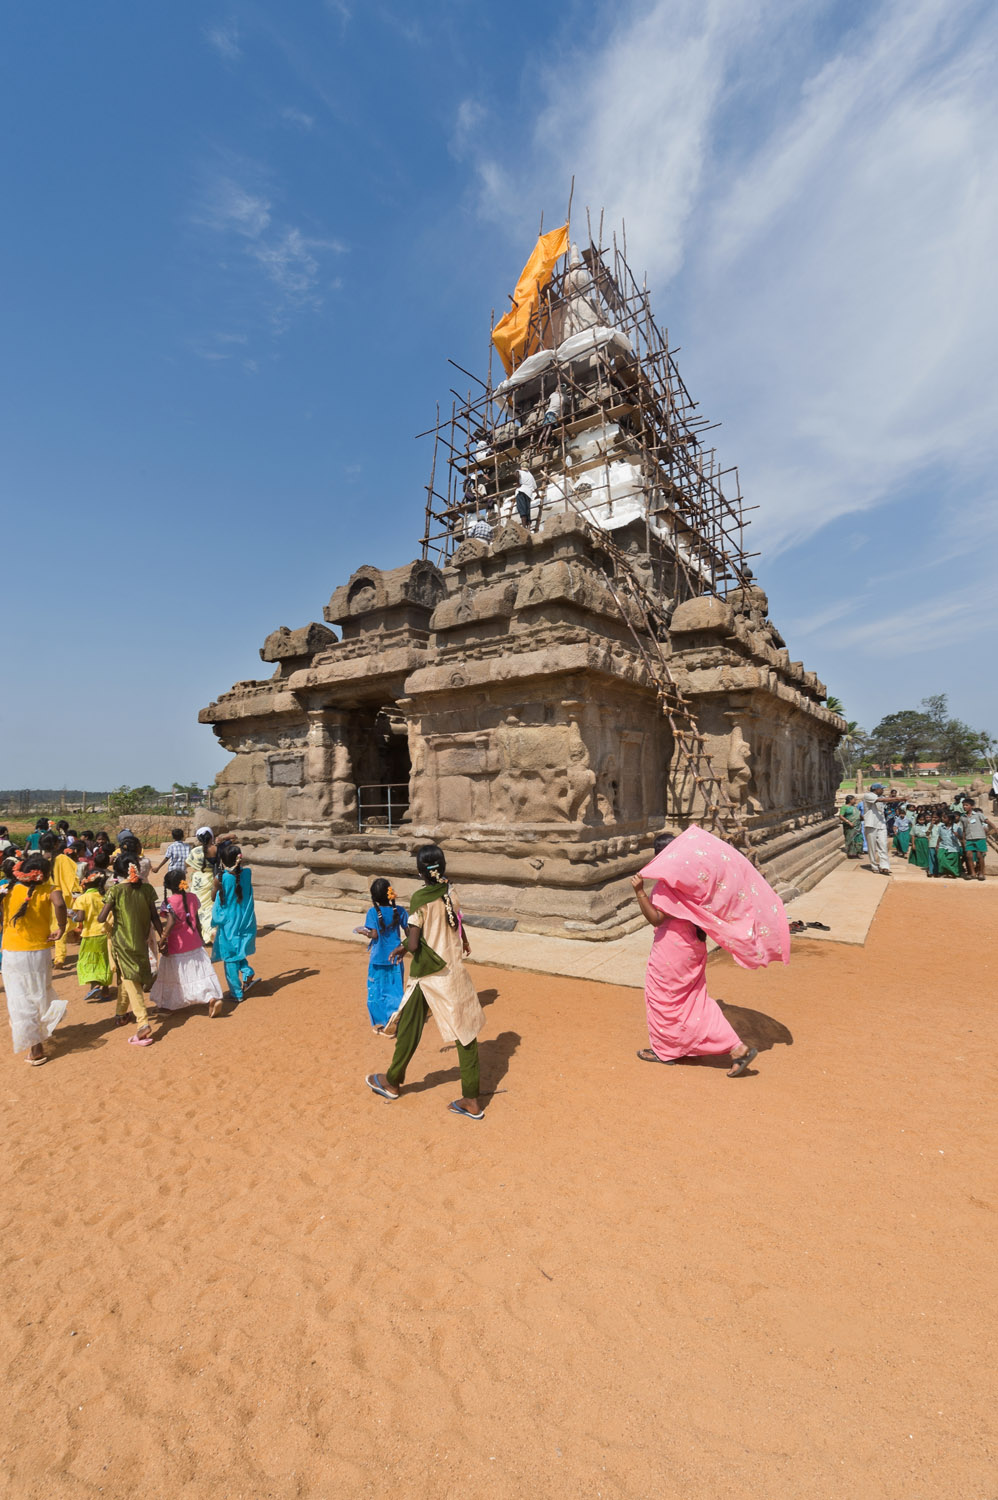 Mamallapuram, Tamil Nadu